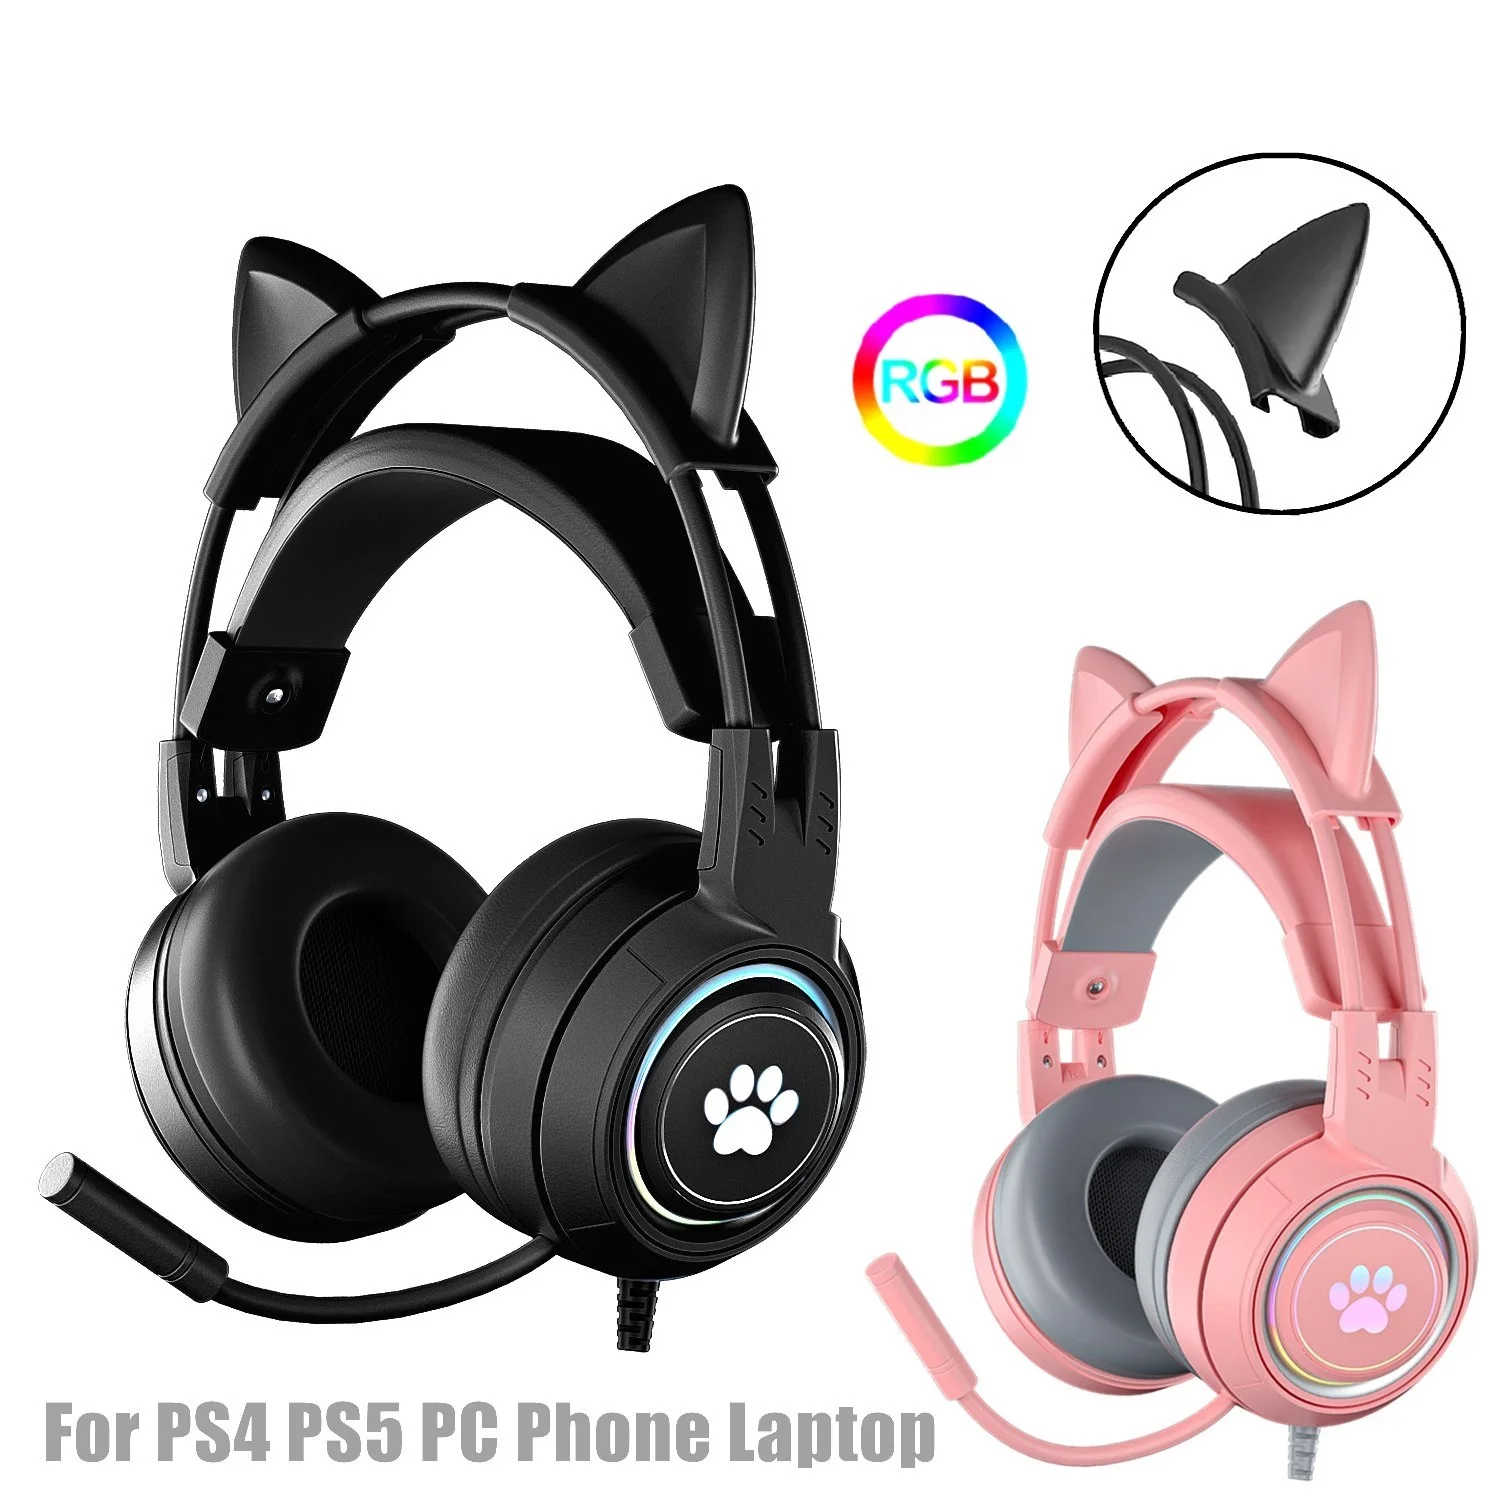 

Верх. Hi-Fi стереонаушники с басами и кошачьими ушками, наушники с микрофоном для PS5, гарнитура для геймеров для девочек, красный, синий, черный,...